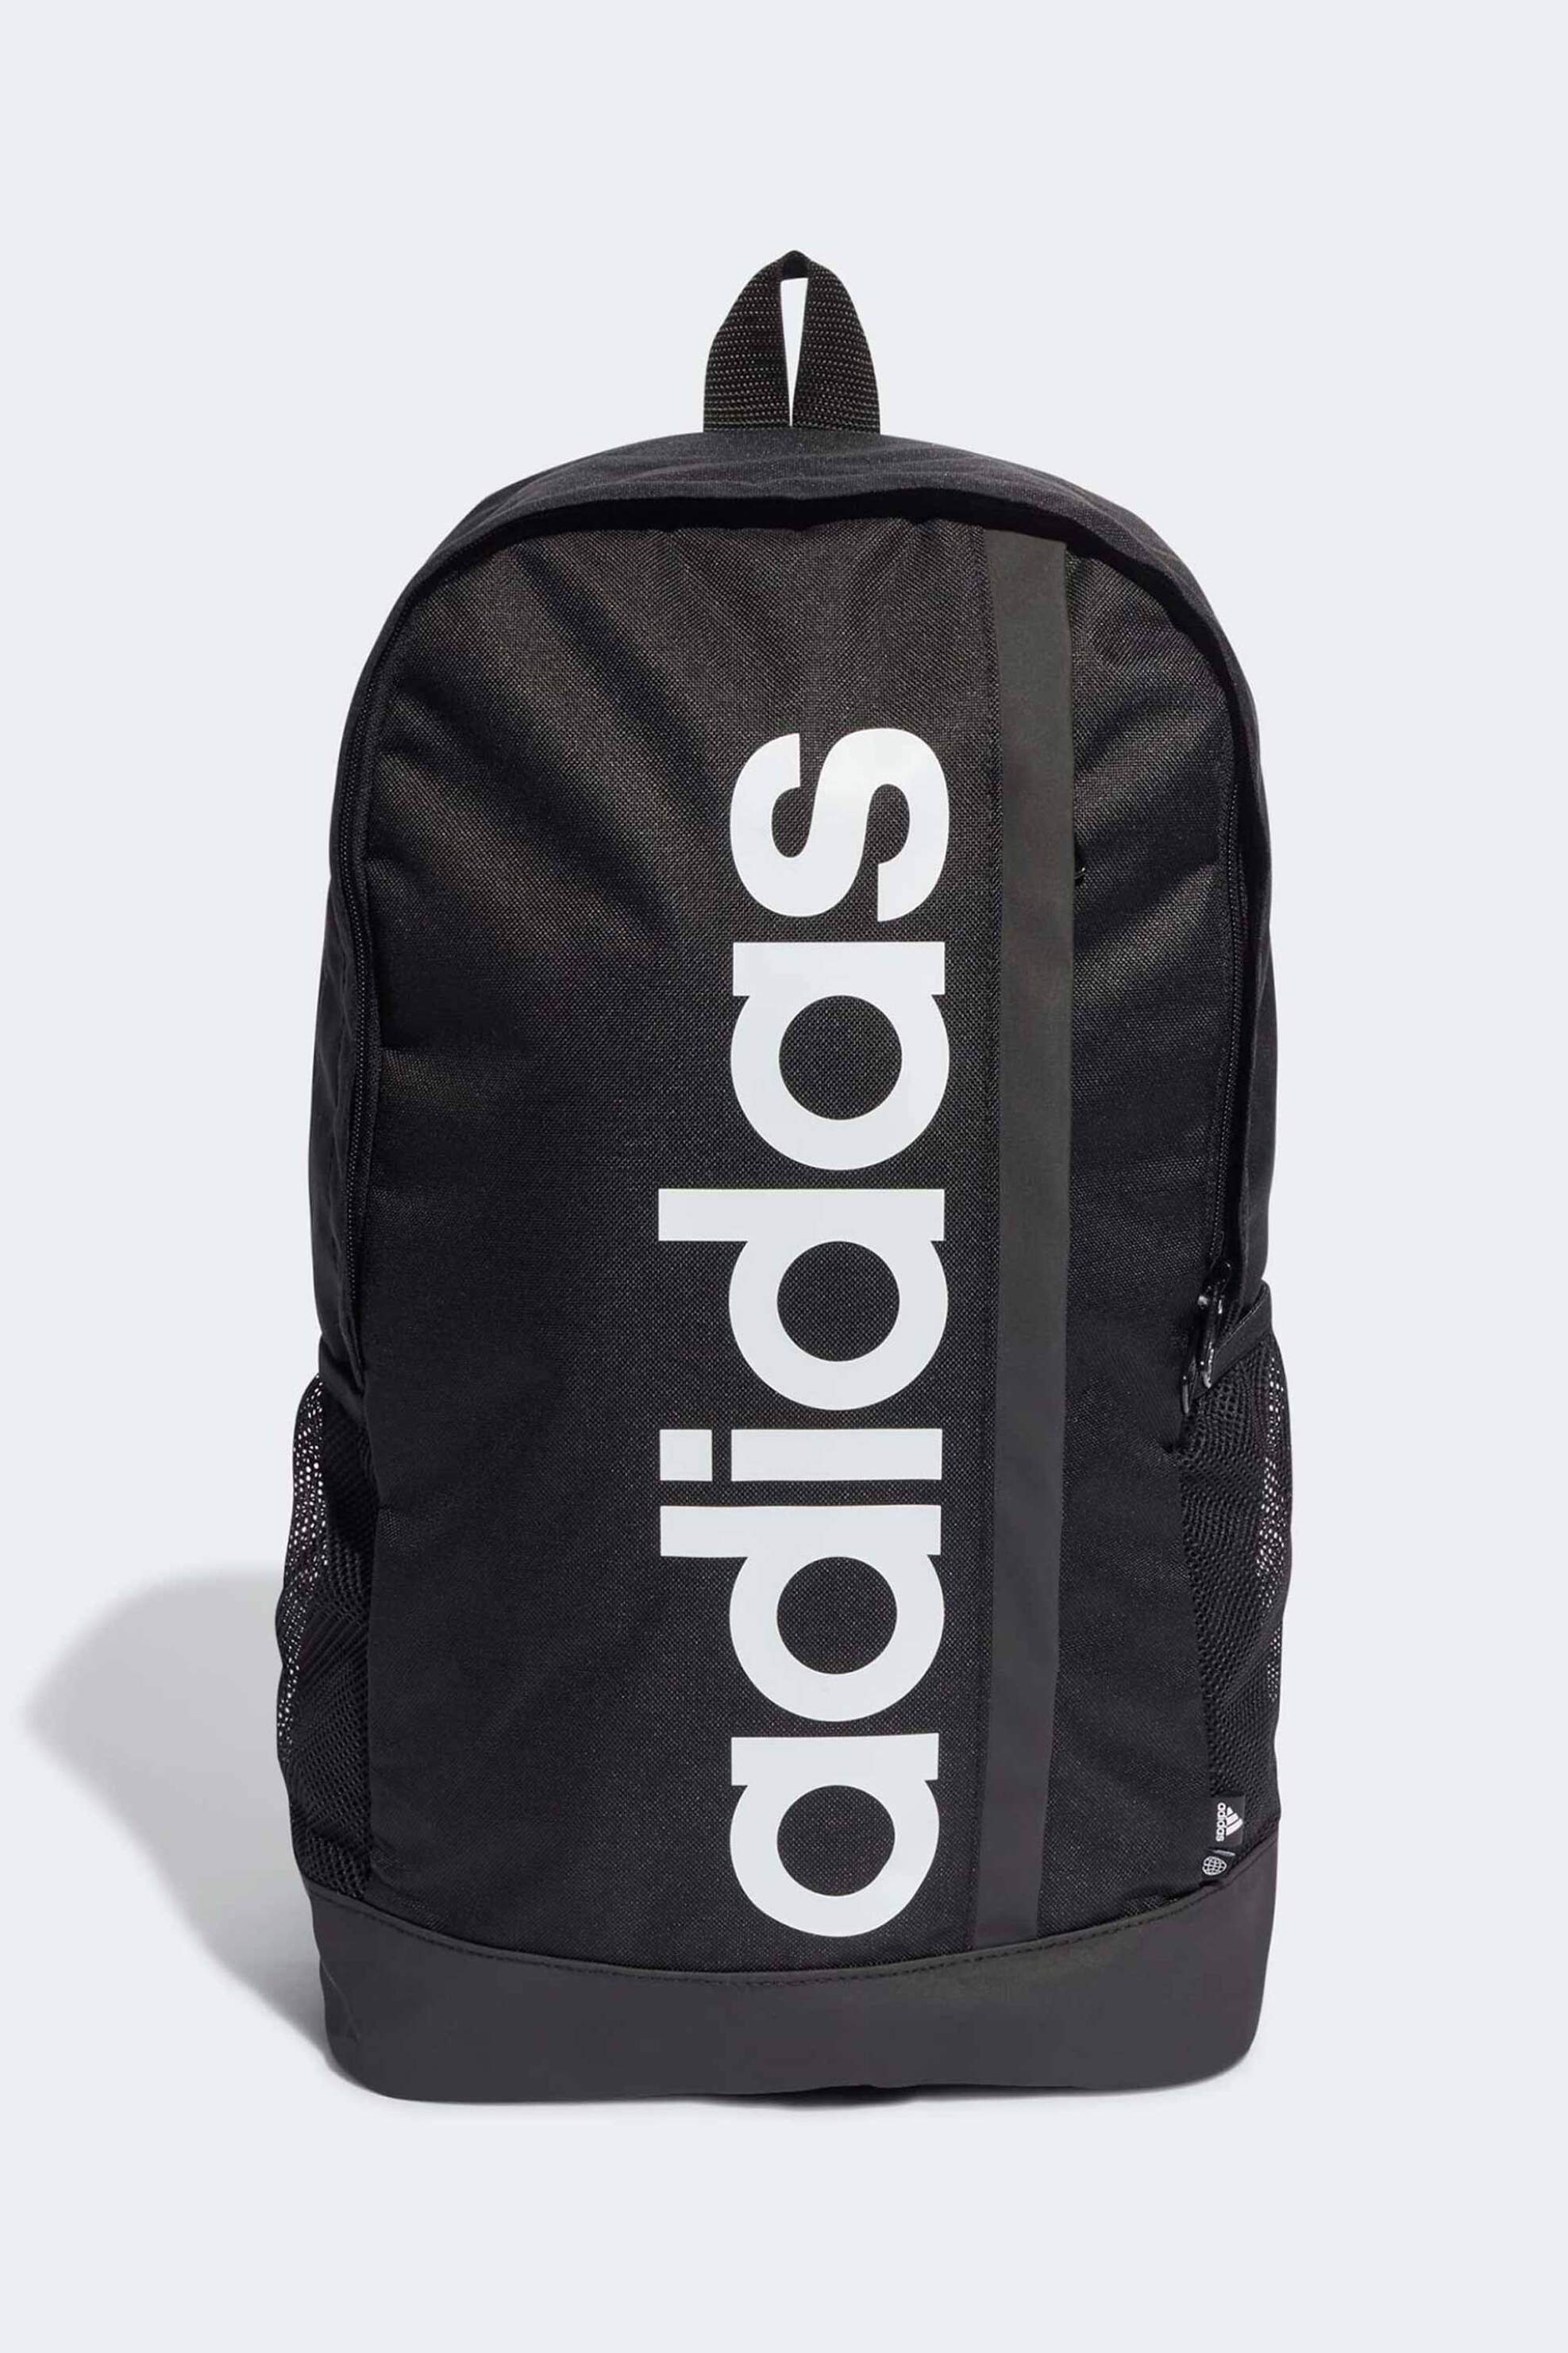 Ανδρική Μόδα > Ανδρικά Αθλητικά > Ανδρικός Aθλητικός Eξοπλισμός > Ανδρικές Αθλητικές Τσάντες > Ανδρικά Αθλητικά Backpacks Adidas unisex backpack "Essentials Linear" - HT4746 Μαύρο